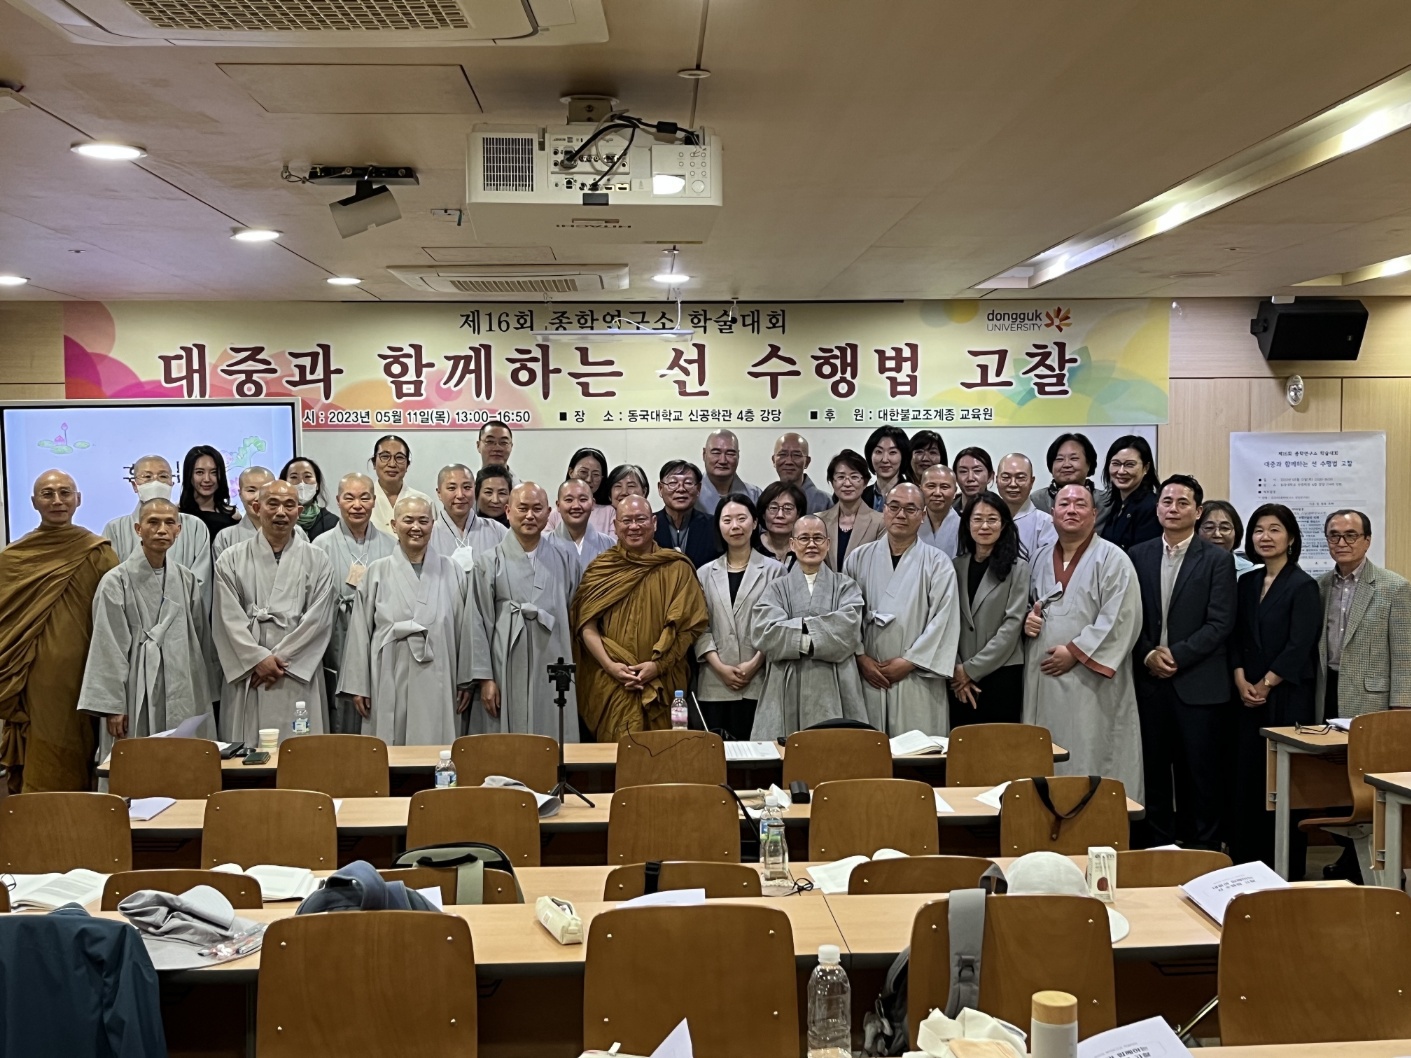 2023년 종학연구소 제16회 학술대회 '대중과 함께하는 선 수행법 고찰' (The 16th Academic Conference of the Institute for the Study of the Jogye Order of Korean Buddhism)